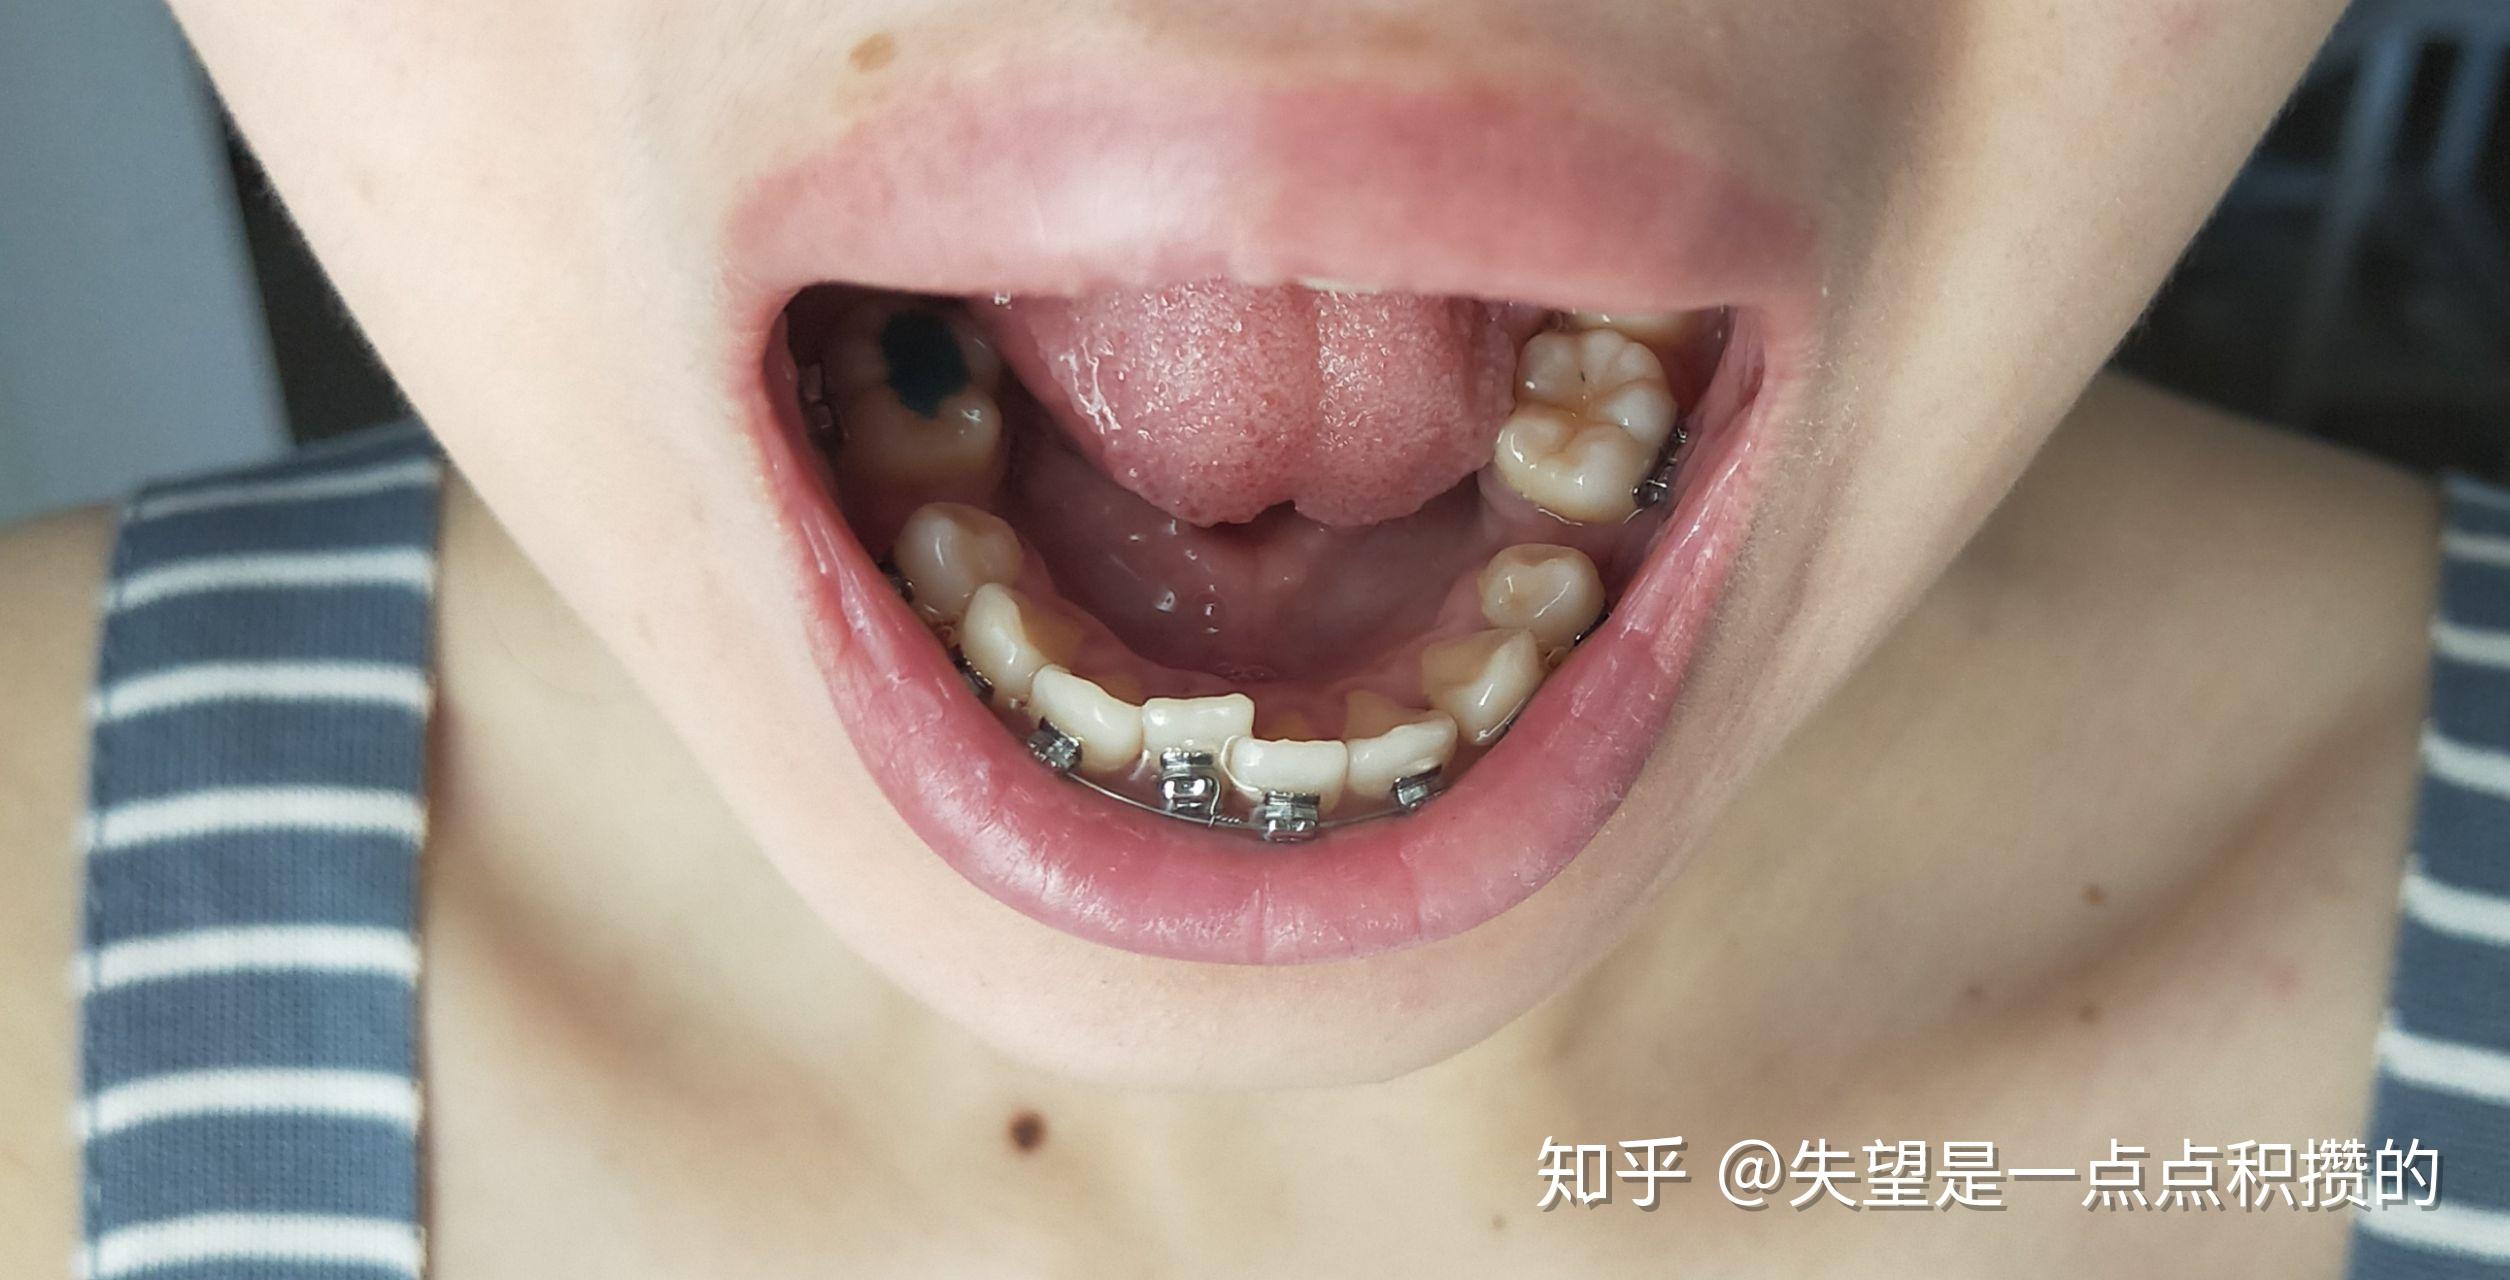 小小牙医科普：龅牙自测指南!牙性骨性自己能判断! - 贝色口腔